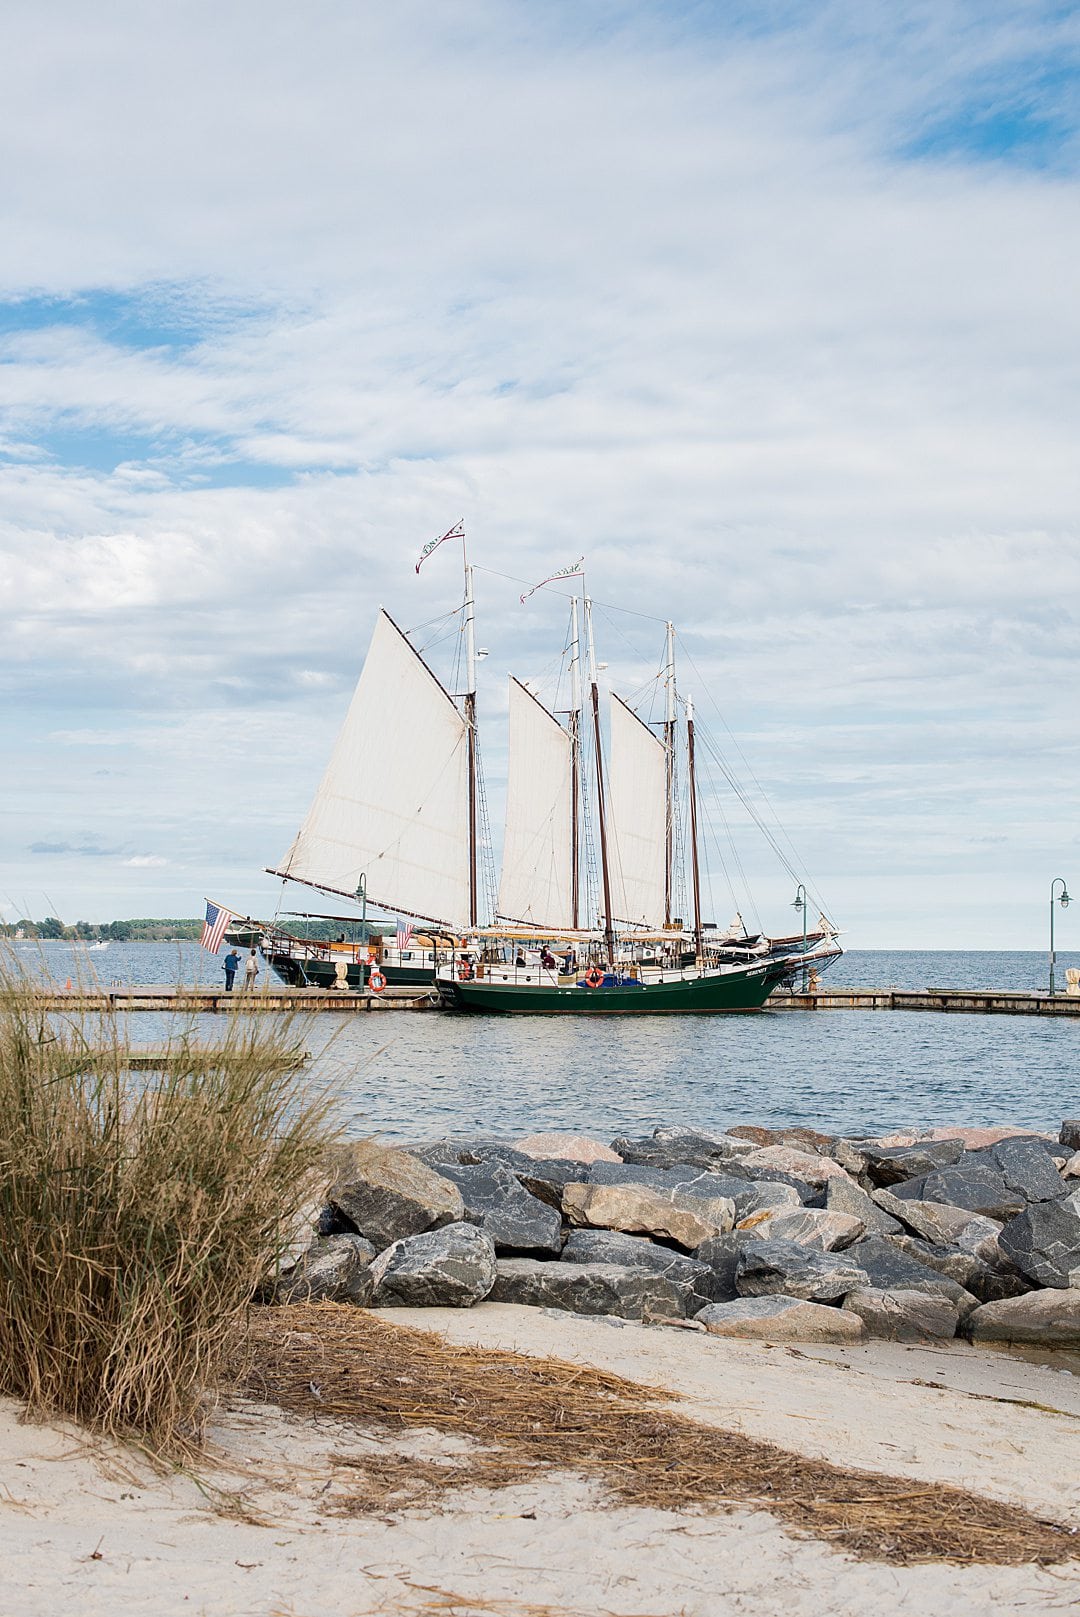 Chesapeake Bay Sailboat Adventure near Williamsburg, VA in Yorktown